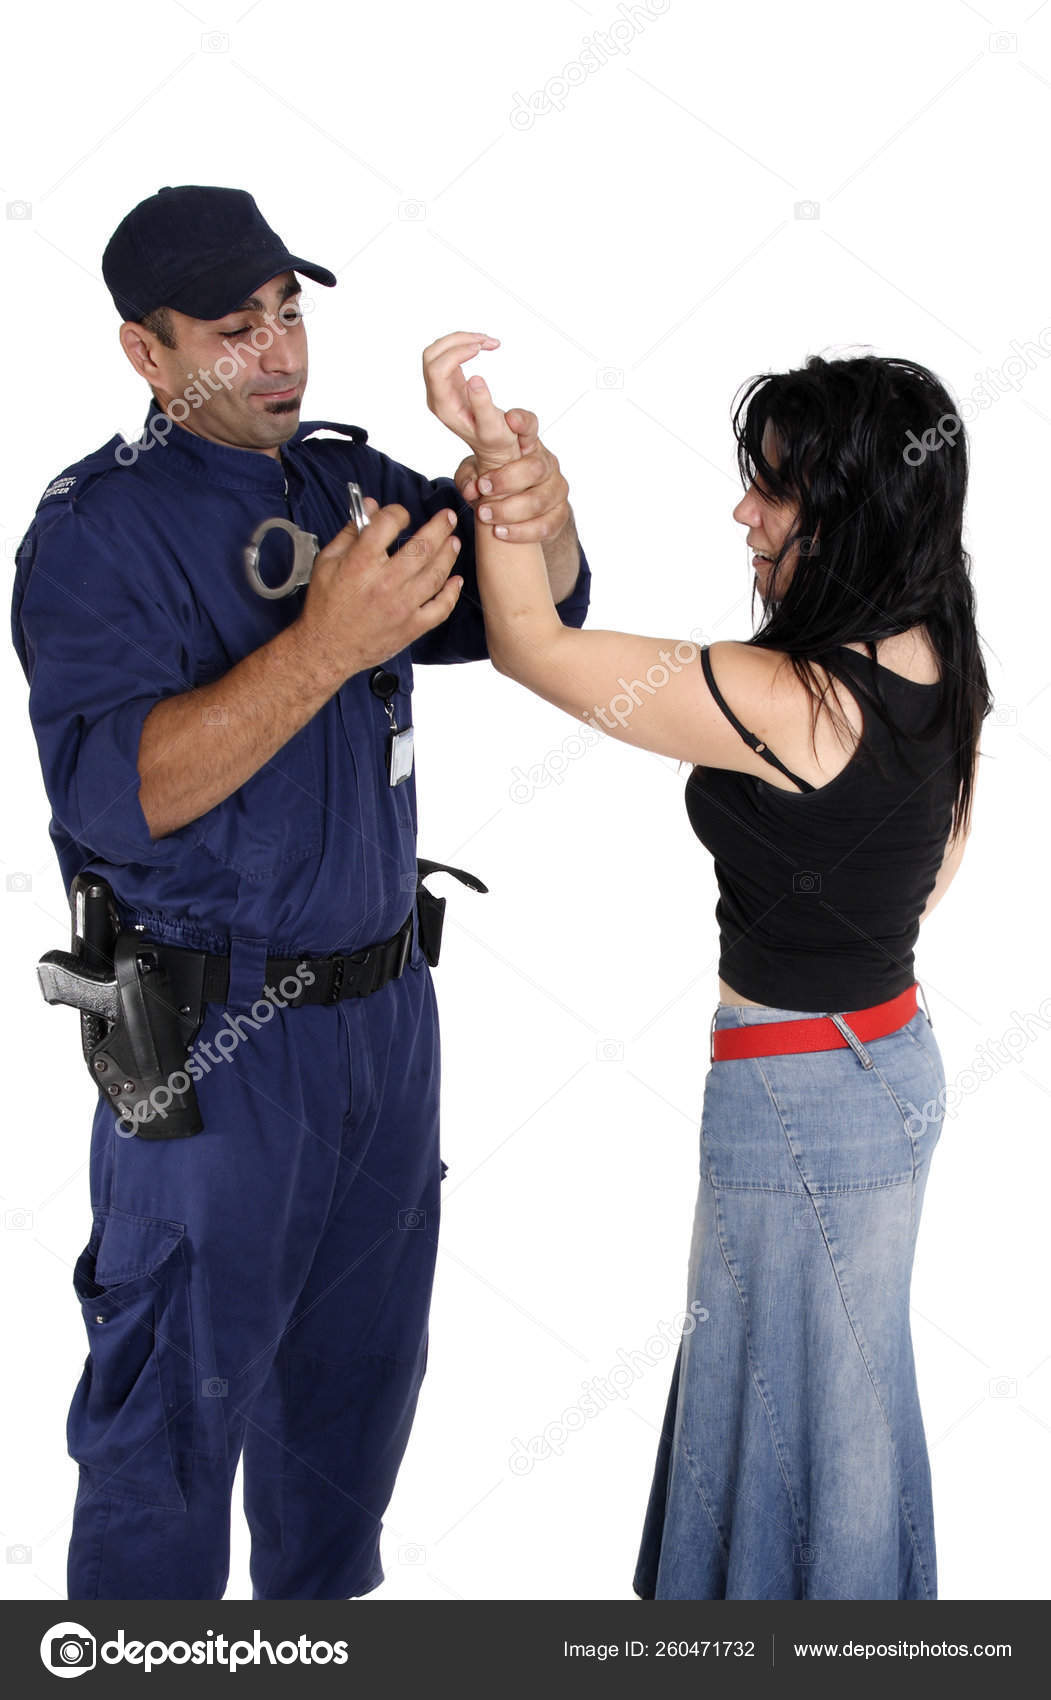 Парень надевает наручники. Человек в наручниках. Полиция наручники. Женщина полицейский с наручниками. Женщины в наручниках полиция.